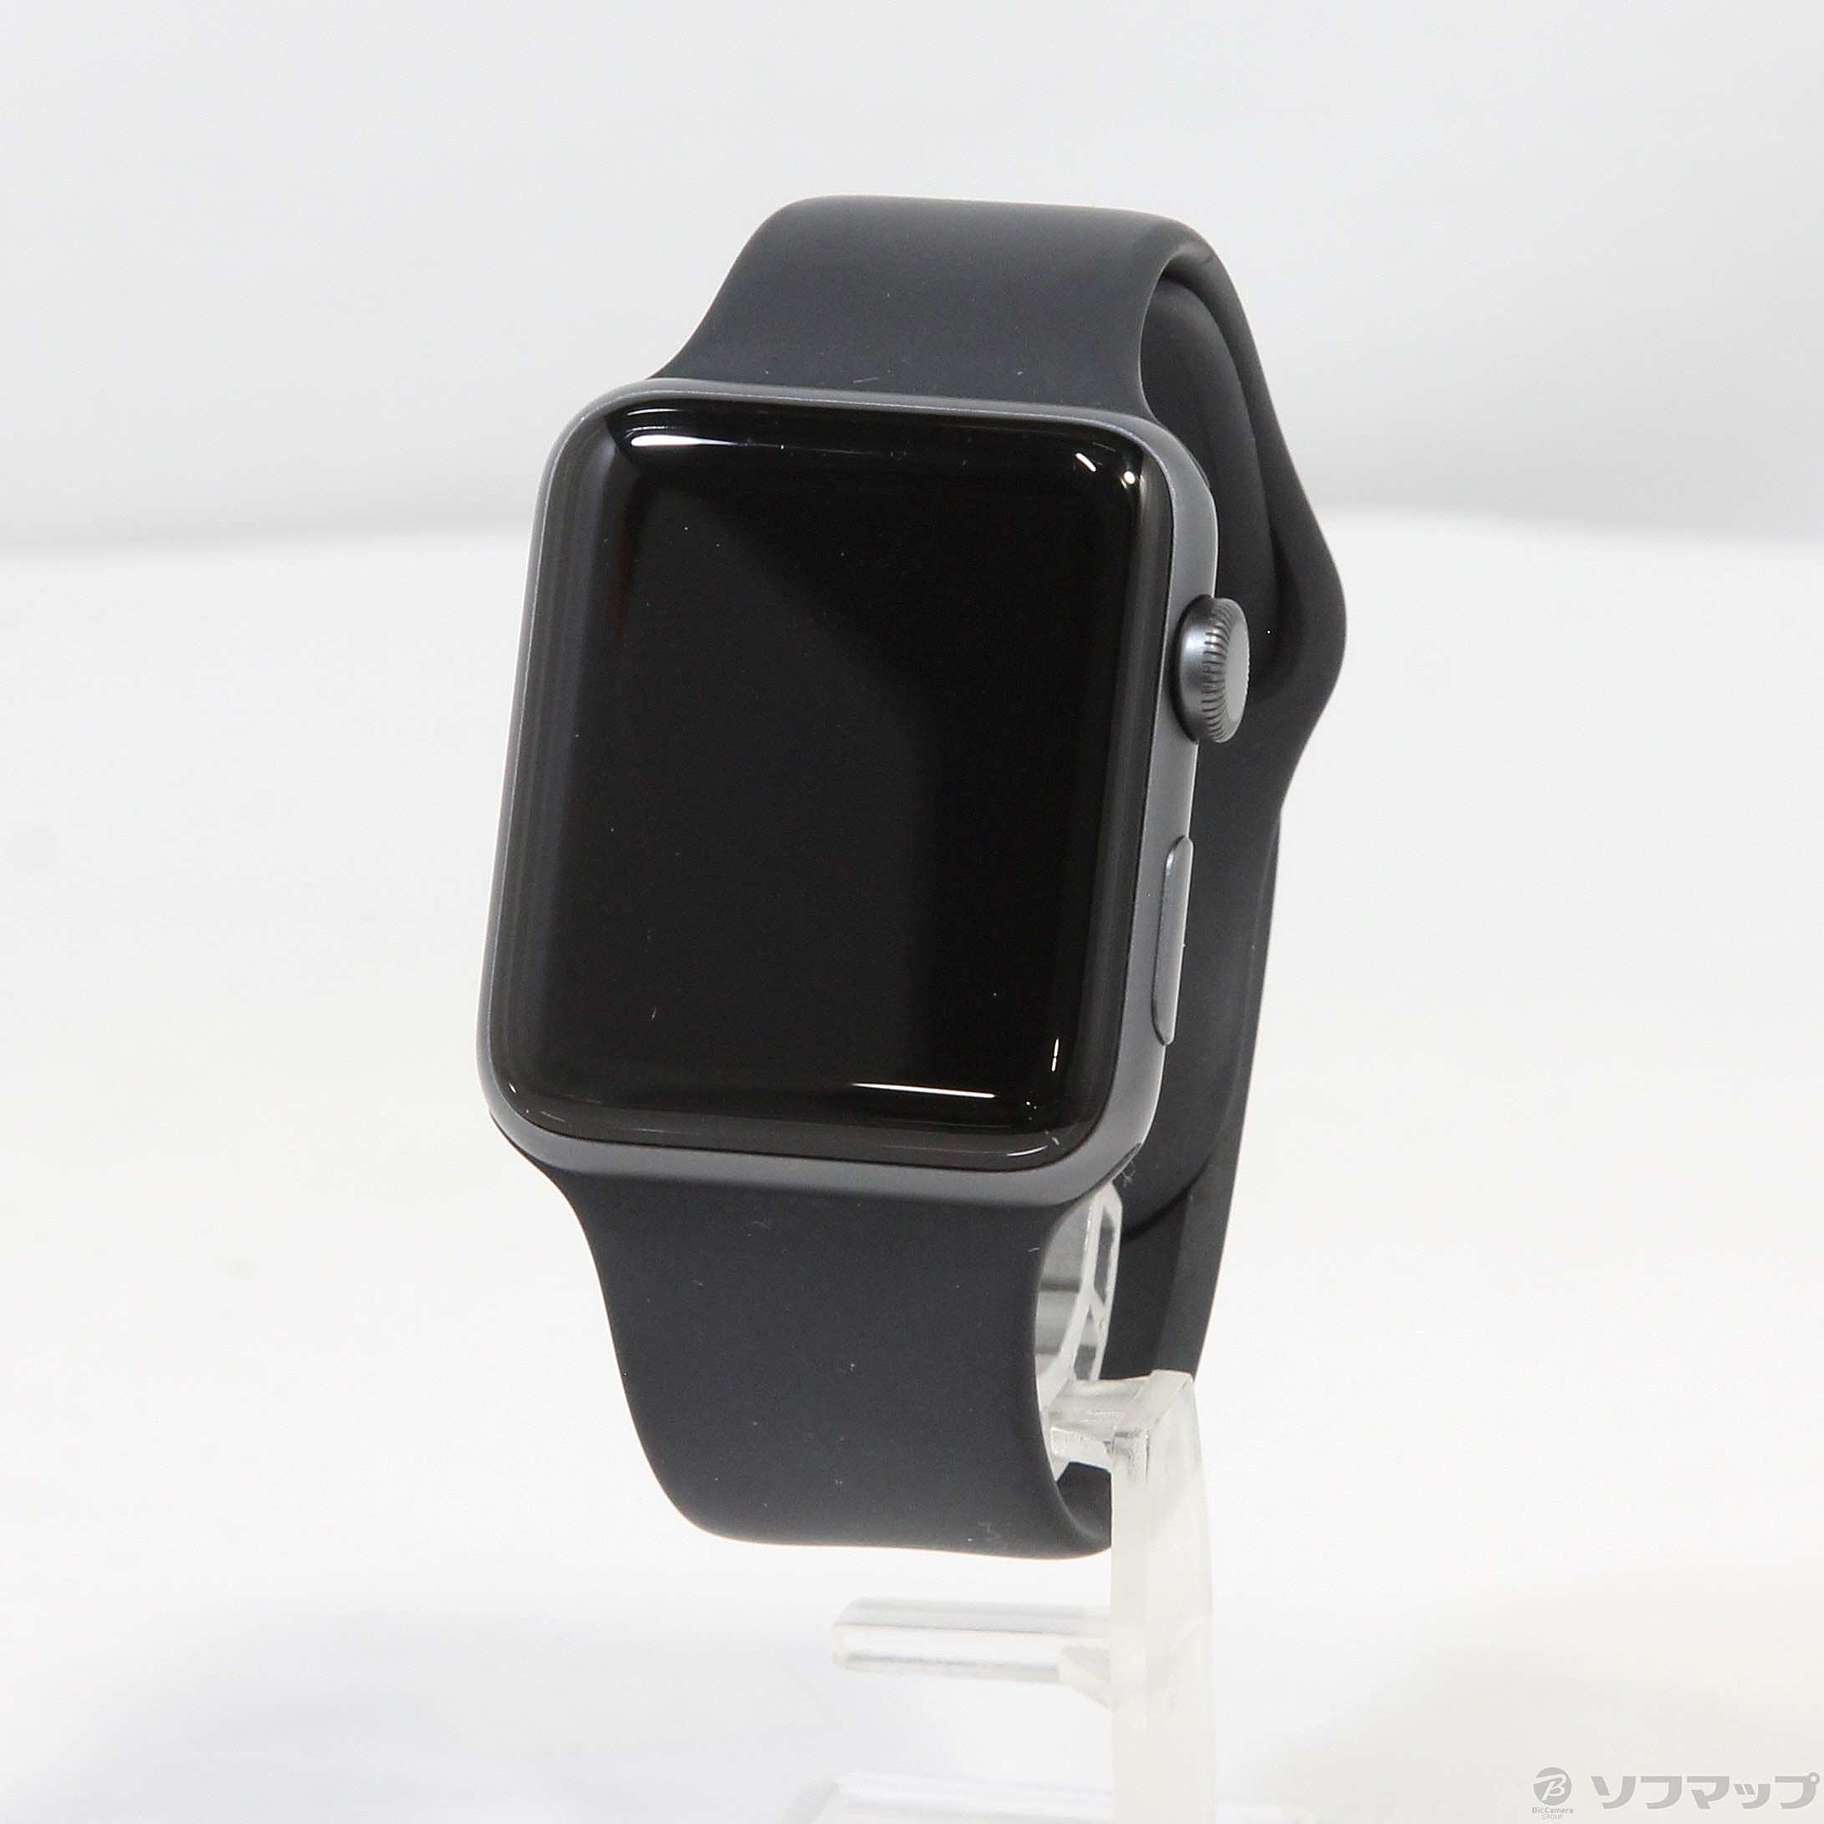 〔中古品〕 Apple Watch Series 3 GPS 42mm スペースグレイアルミニウムケース ブラックスポーツバンド